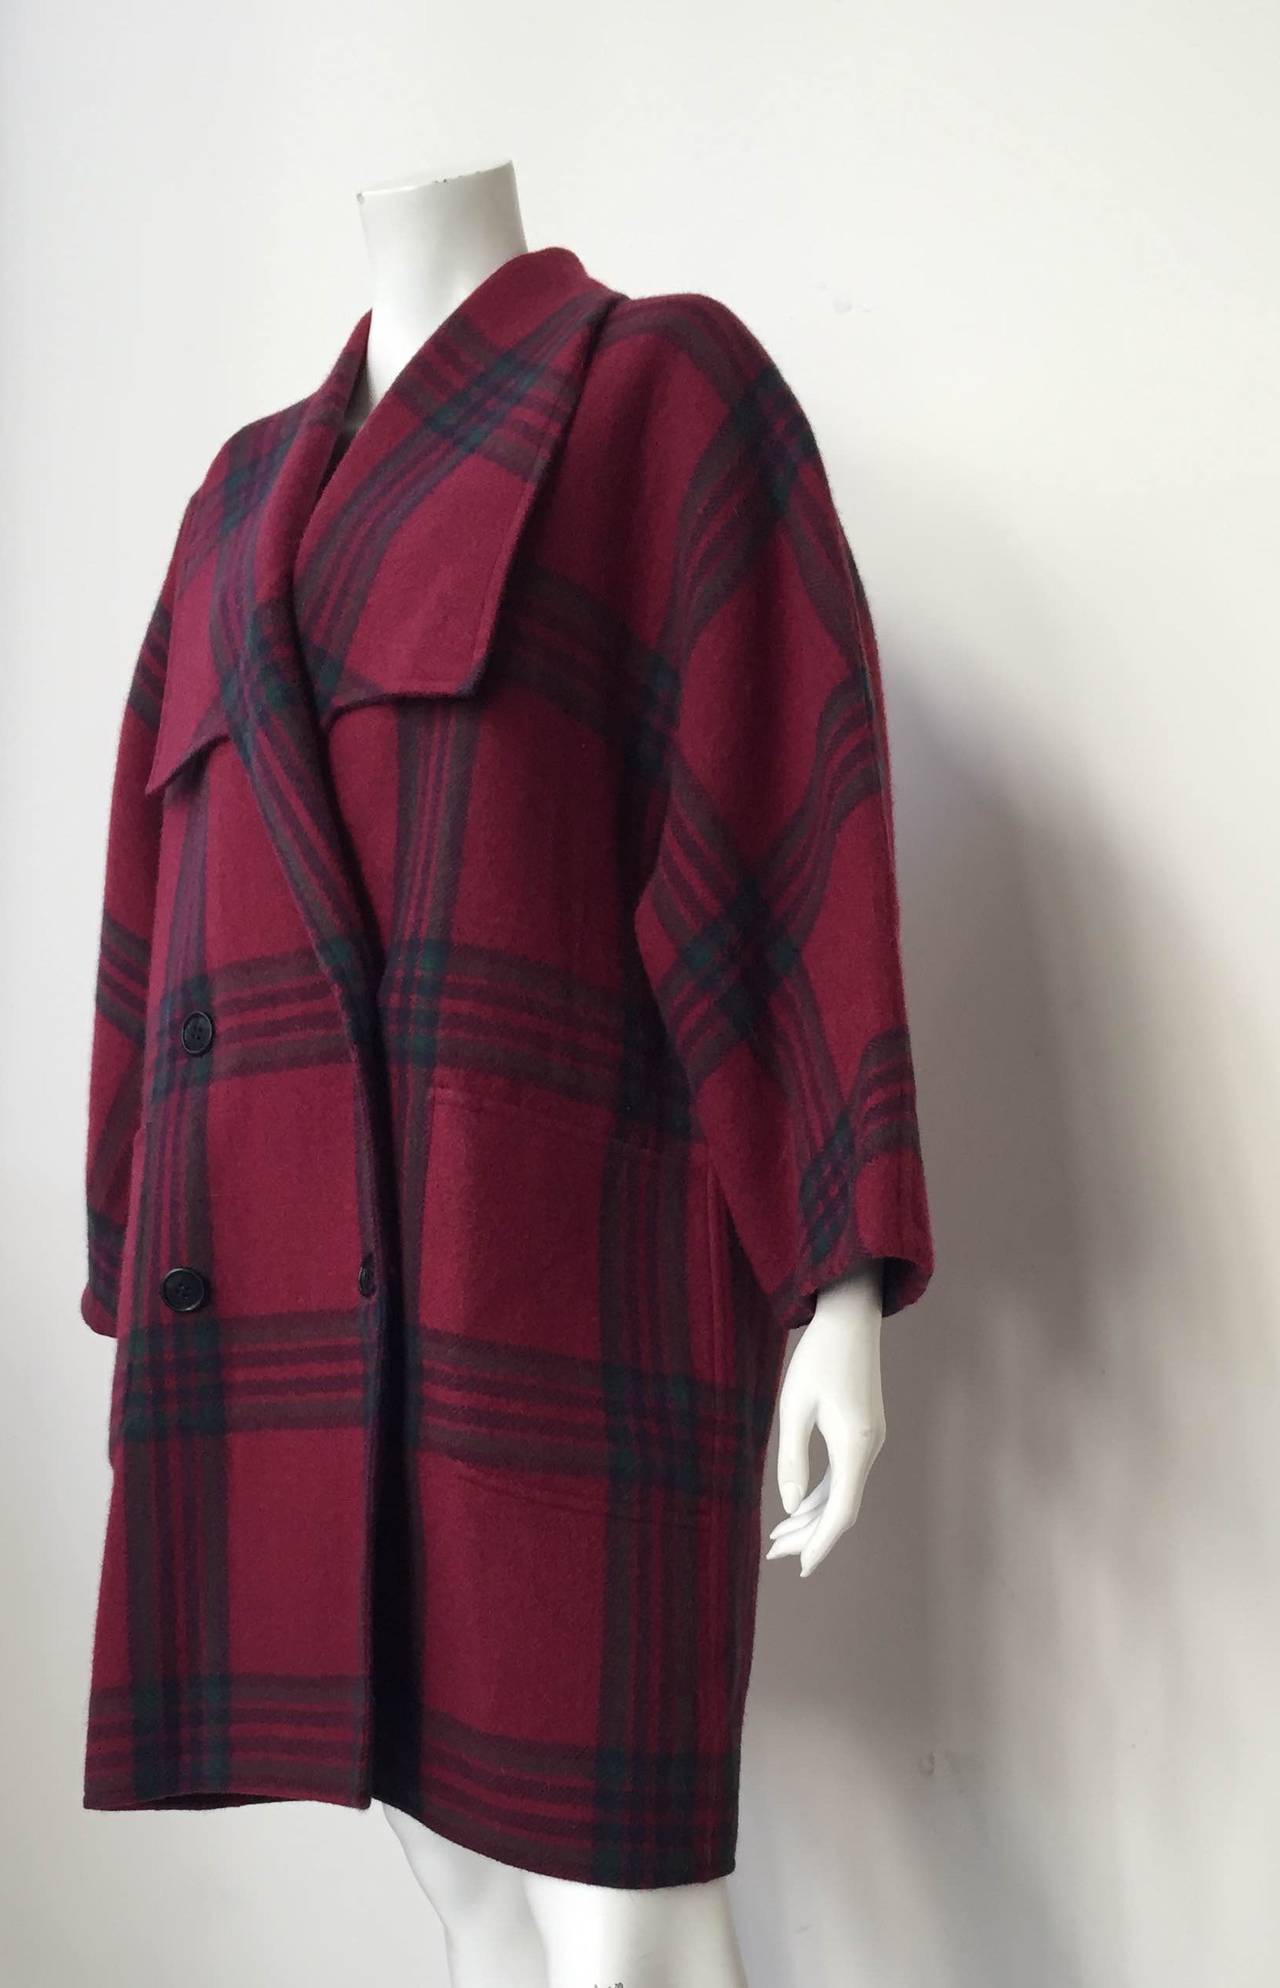 Women's Oscar de la Renta 90s plaid wool cocoon coat size 10.